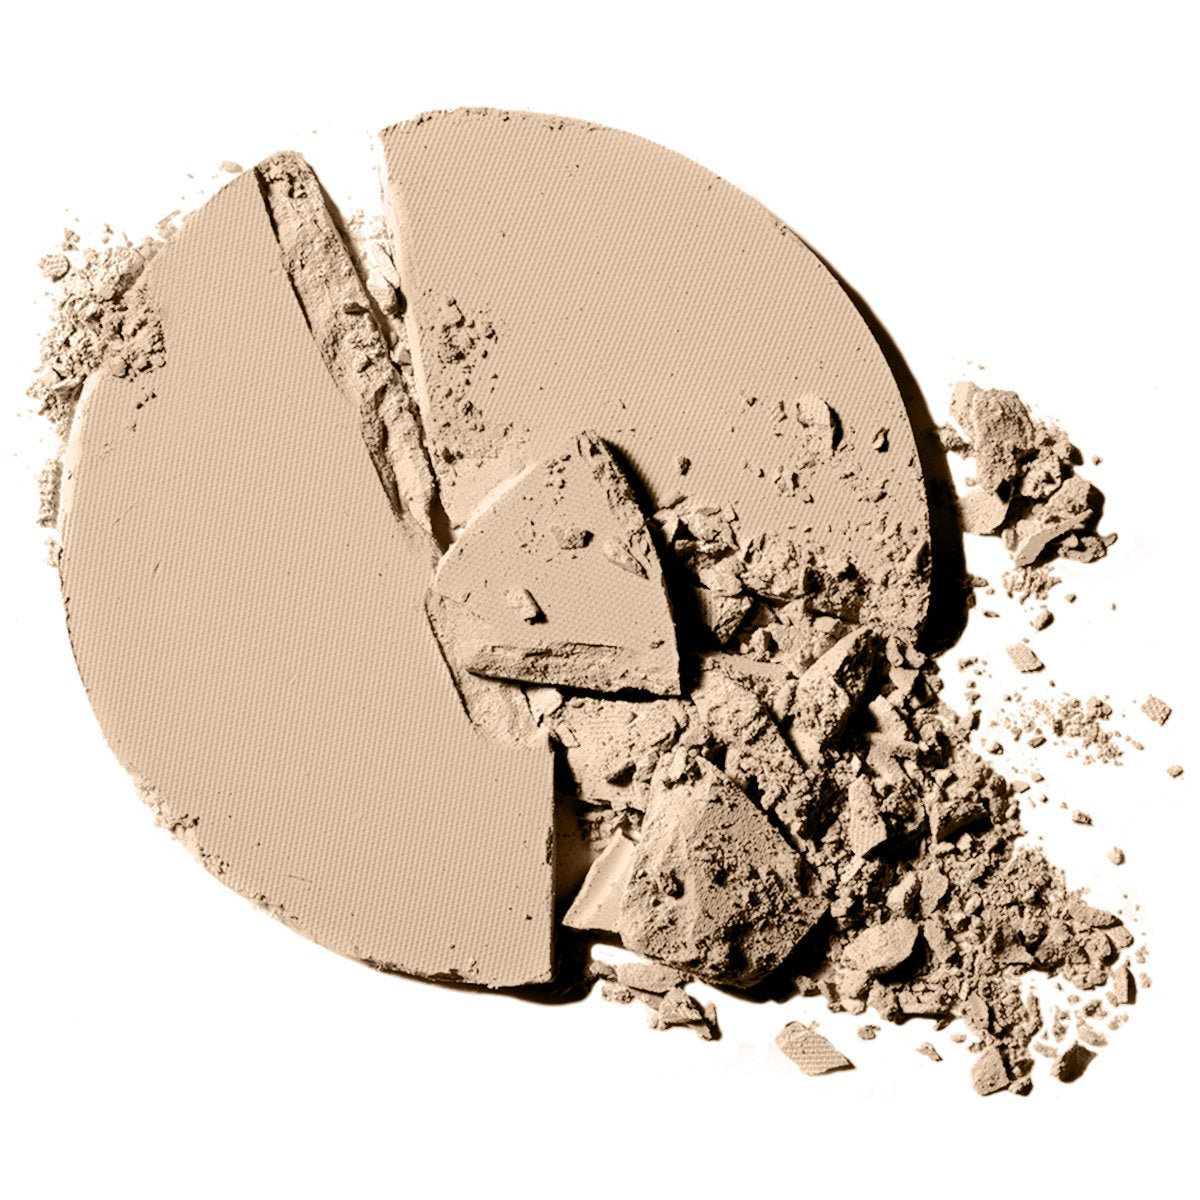 L'Oréal Paris True Match Super Blendable Powder, Light Ivory, 10Gm